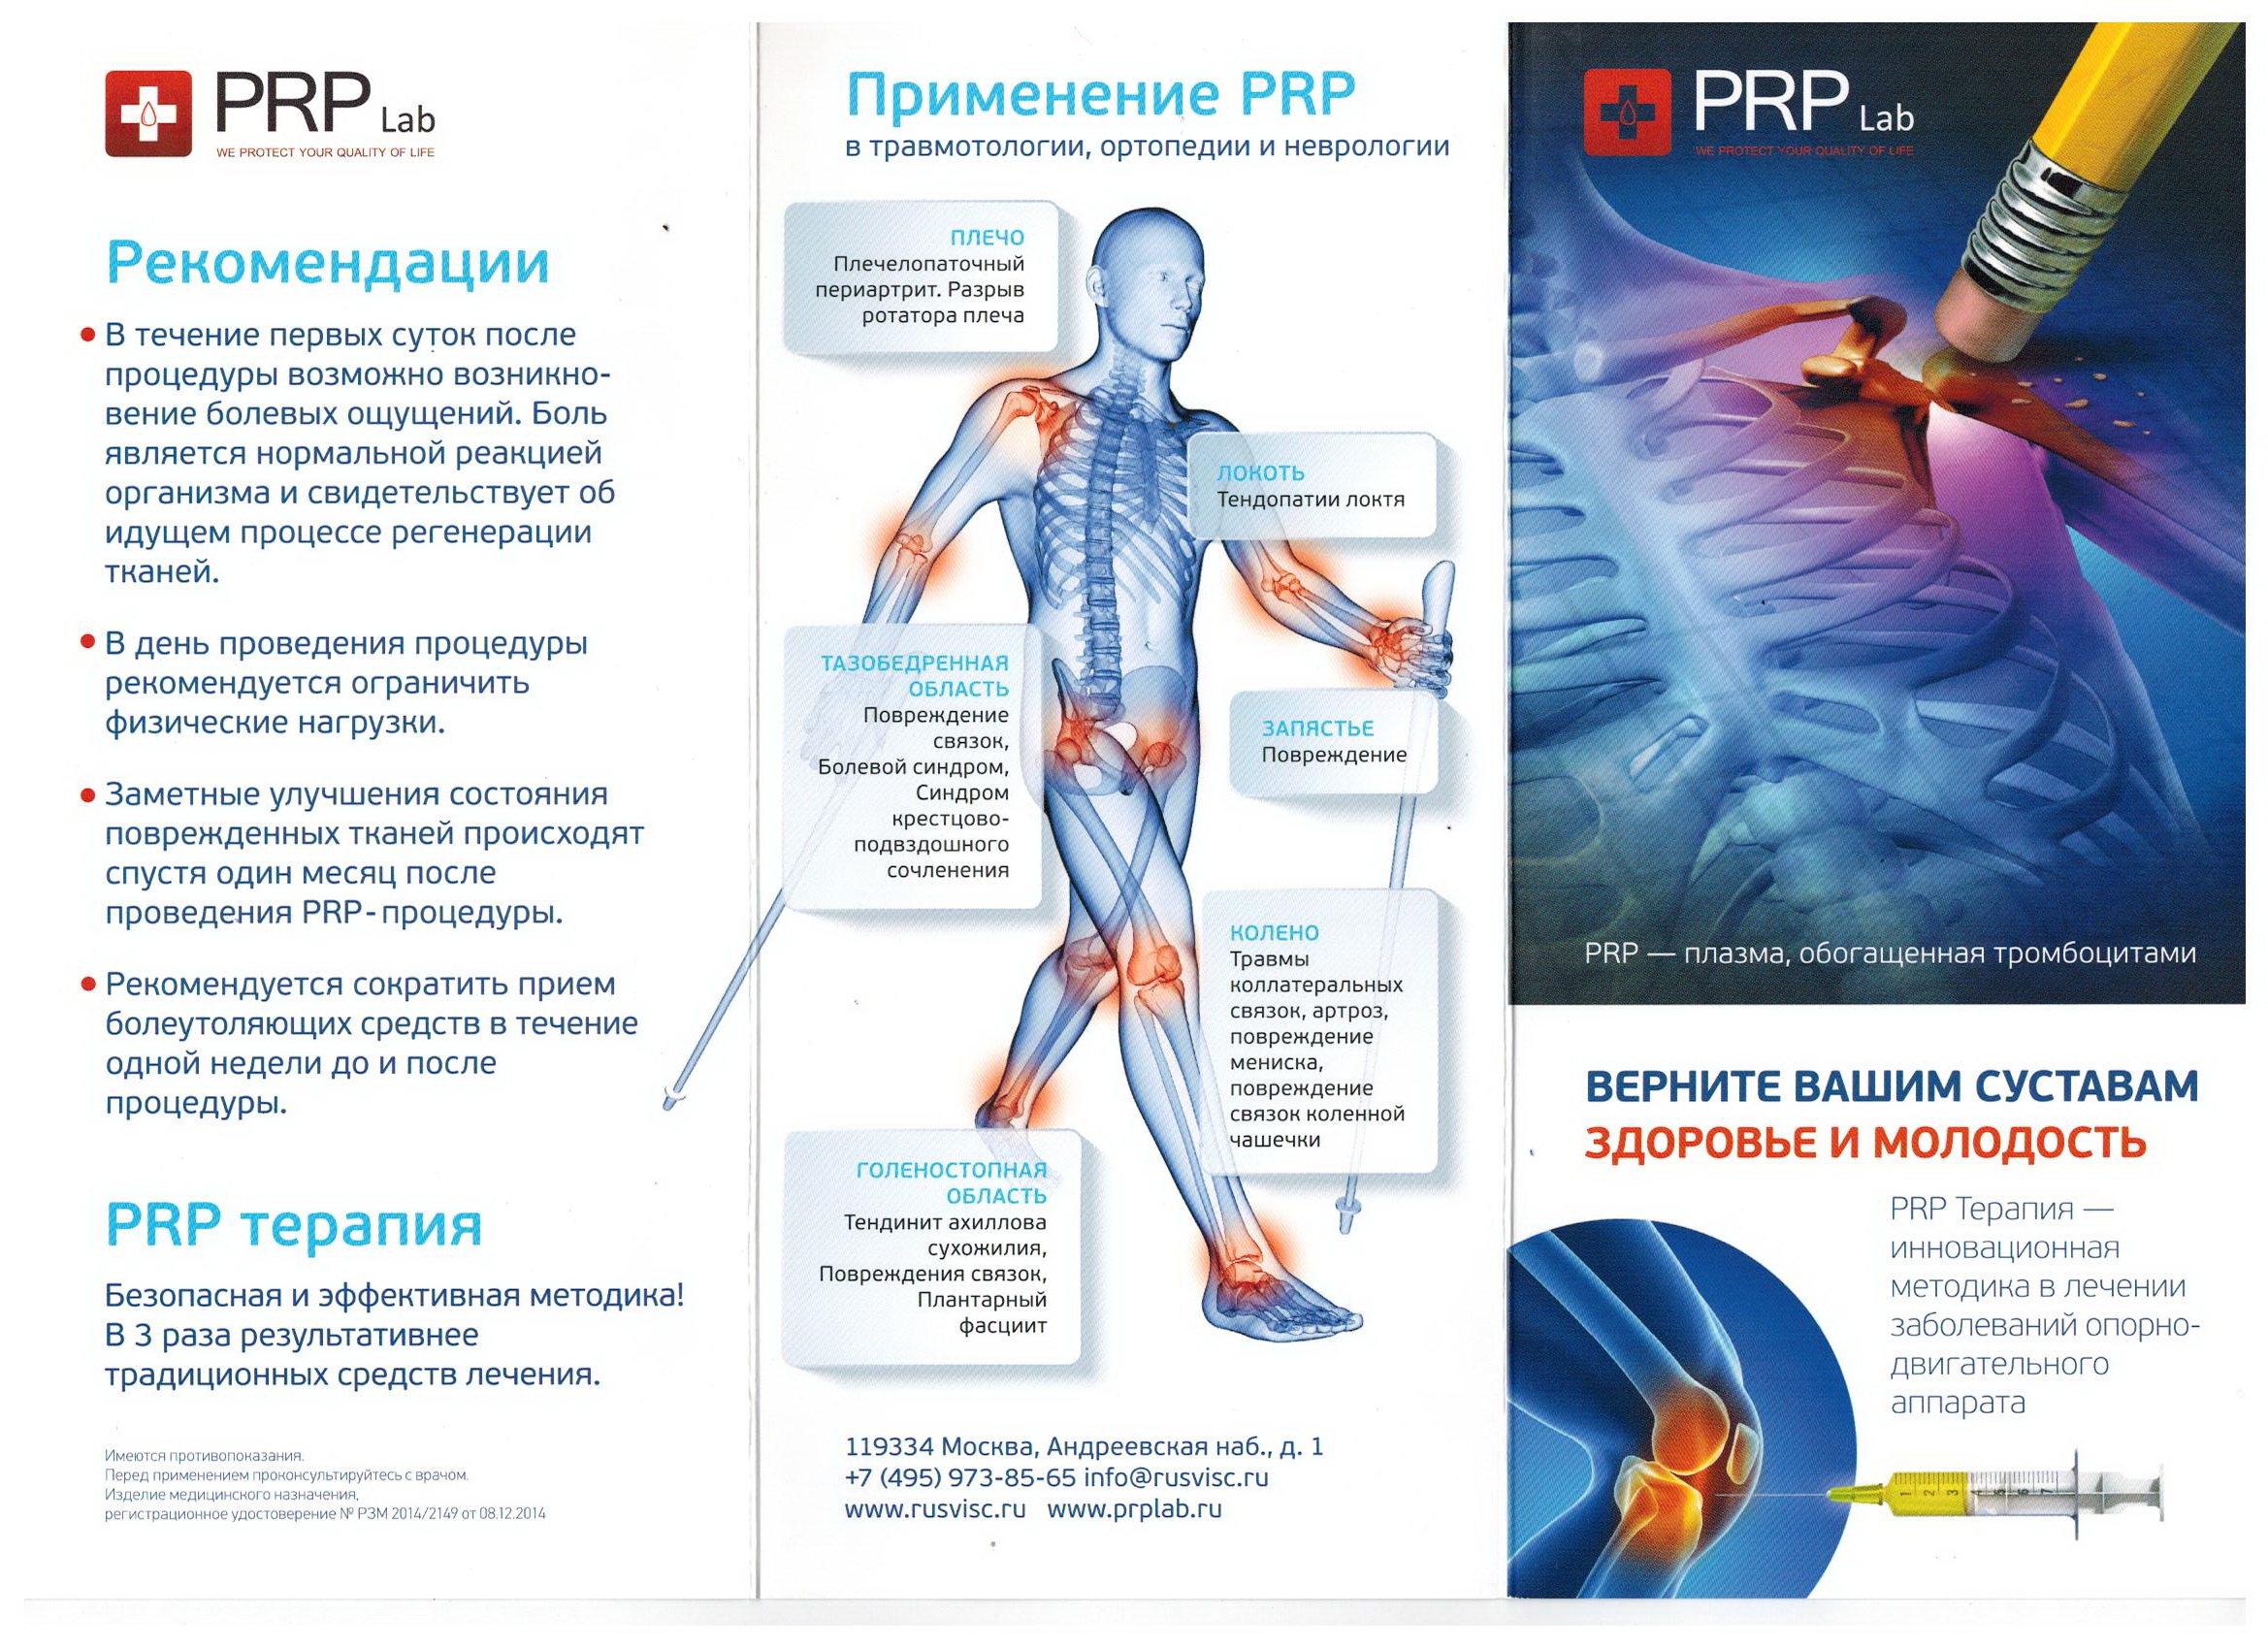 Процедура плазмолифтинга для суставов. Плазмолифтинг PRP терапия коленного сустава. PRP терапия плазма в коленный сустав. Плазмотерапия суставов (PRP-терапия, плазмолифтинг). Плазмотерапия плазма коленного сустава.